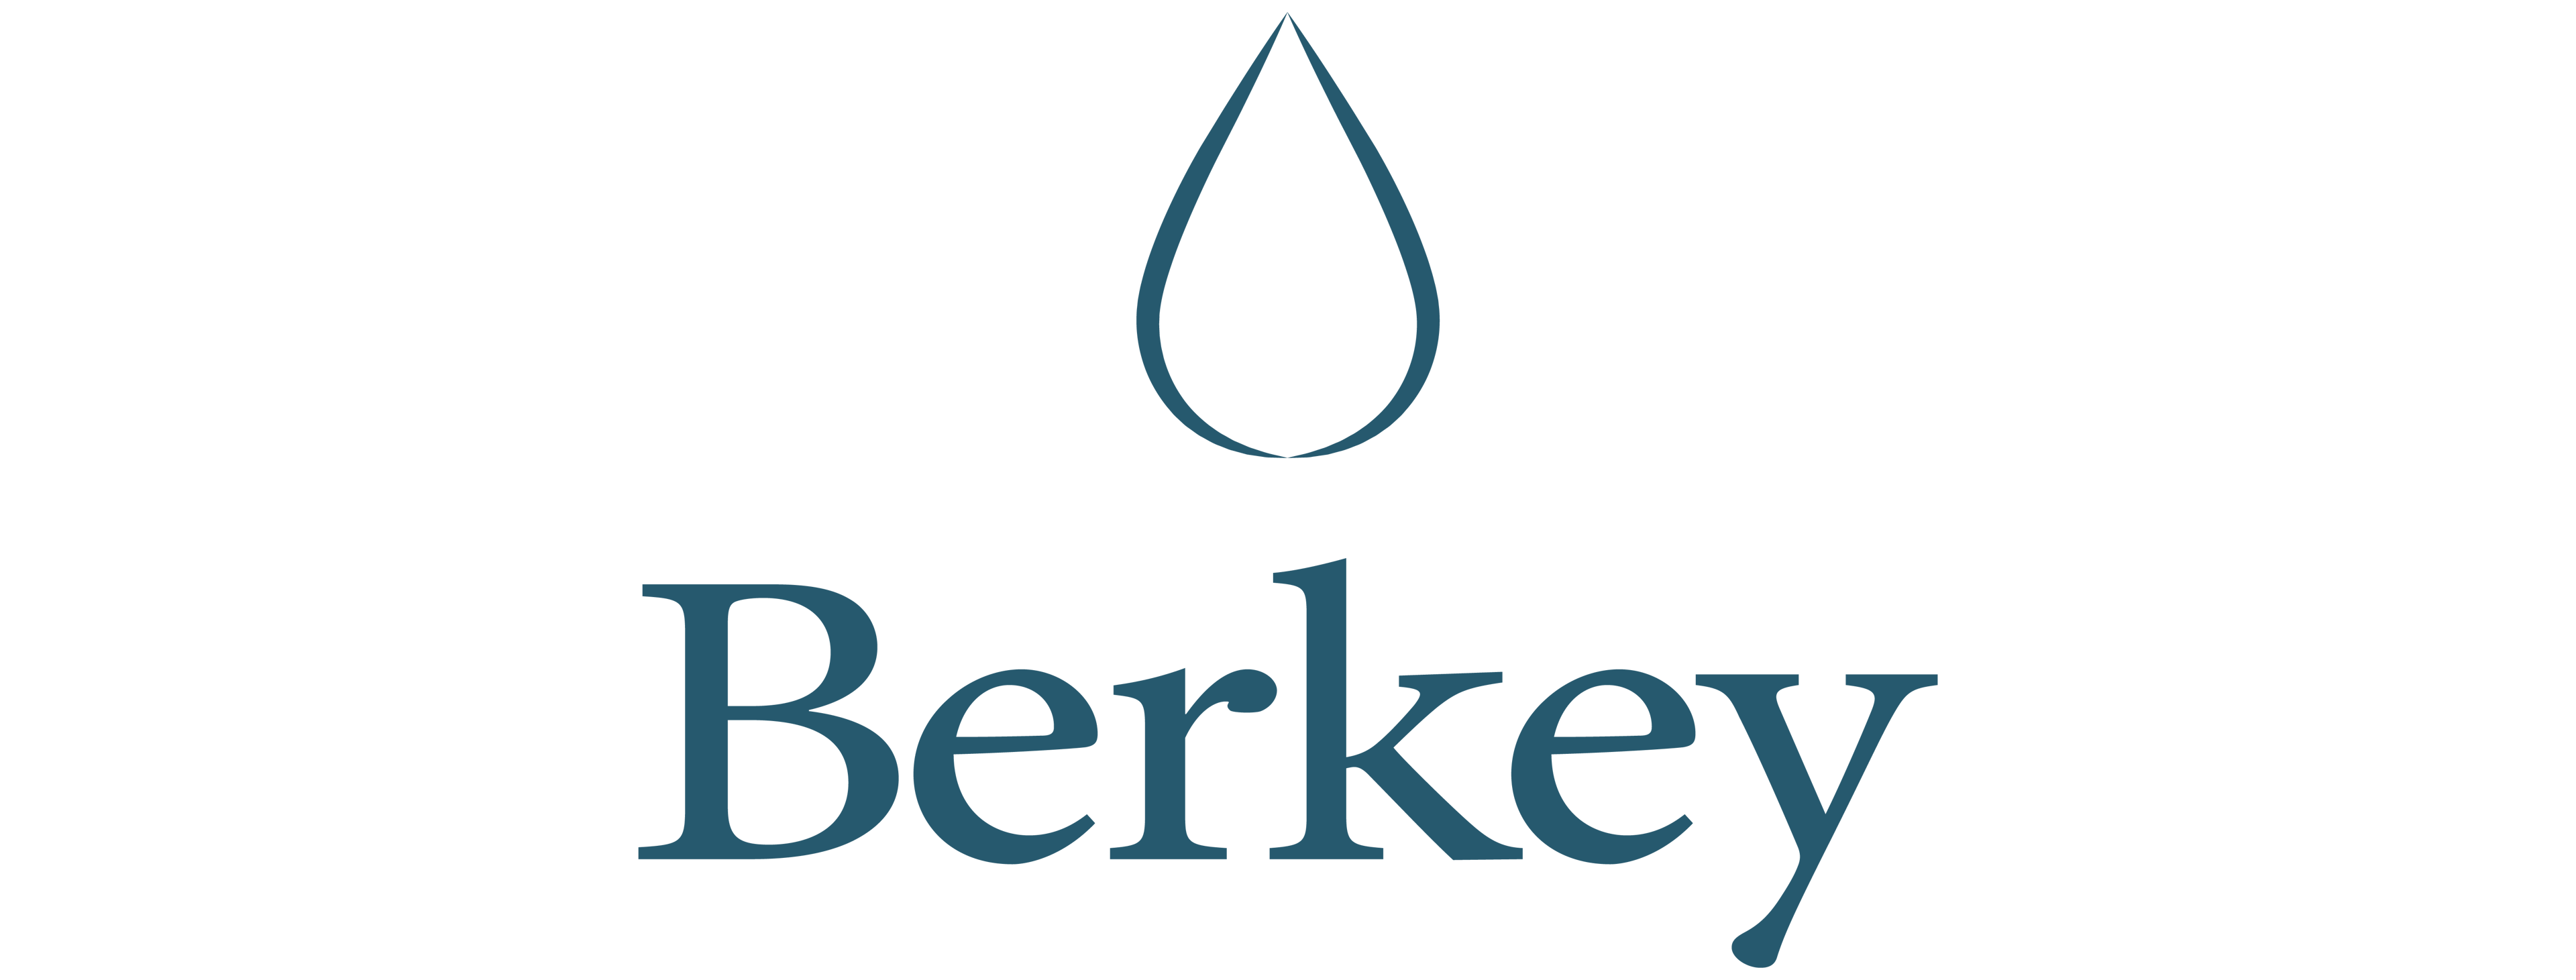 Berkey Help Center logo